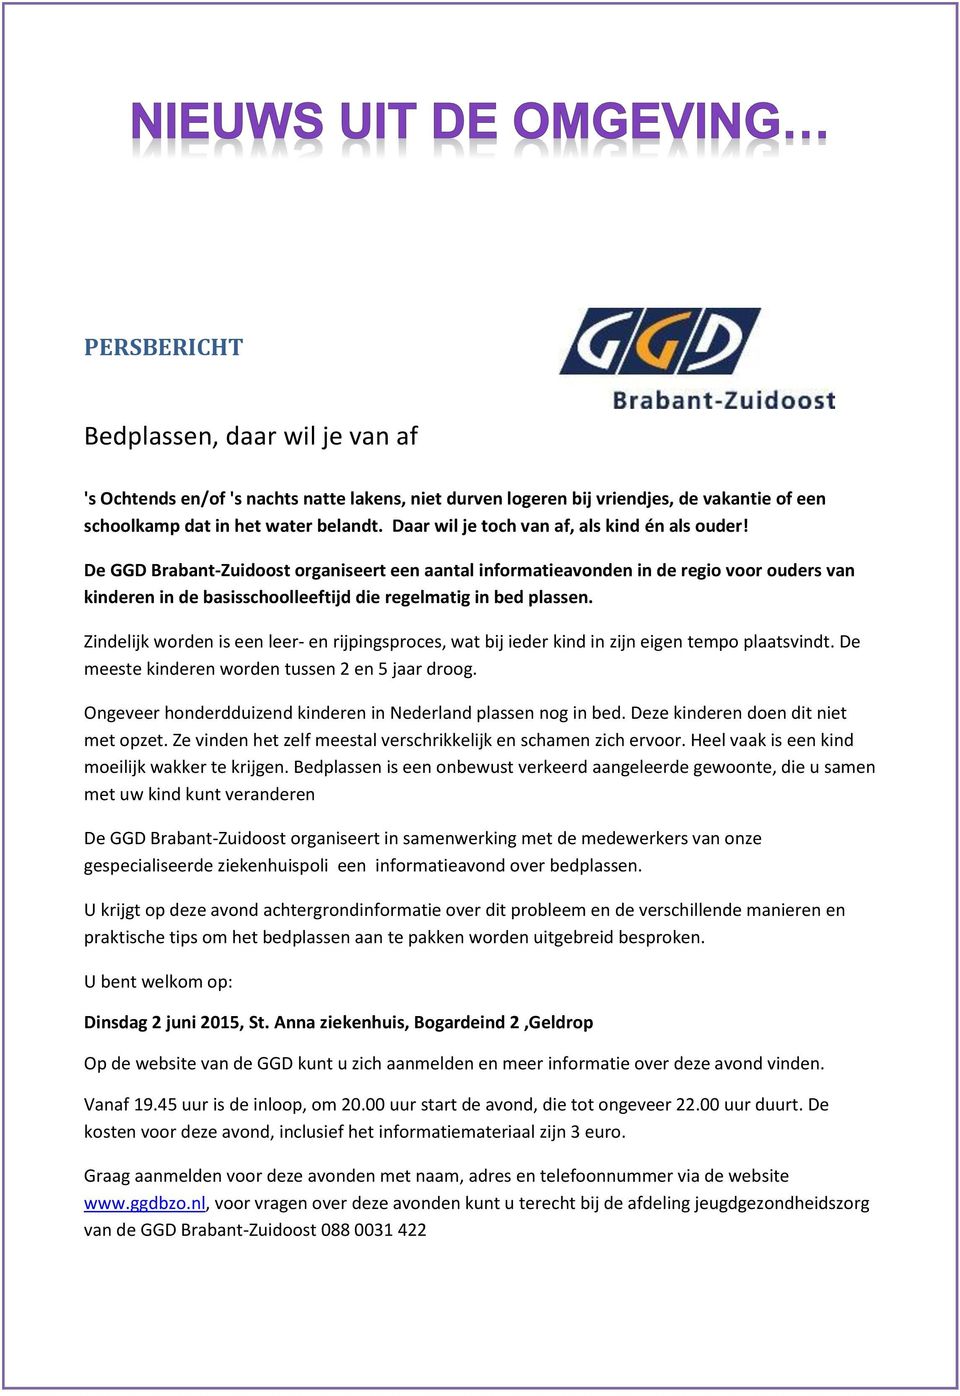 De GGD Brabant-Zuidoost organiseert een aantal informatieavonden in de regio voor ouders van kinderen in de basisschoolleeftijd die regelmatig in bed plassen.